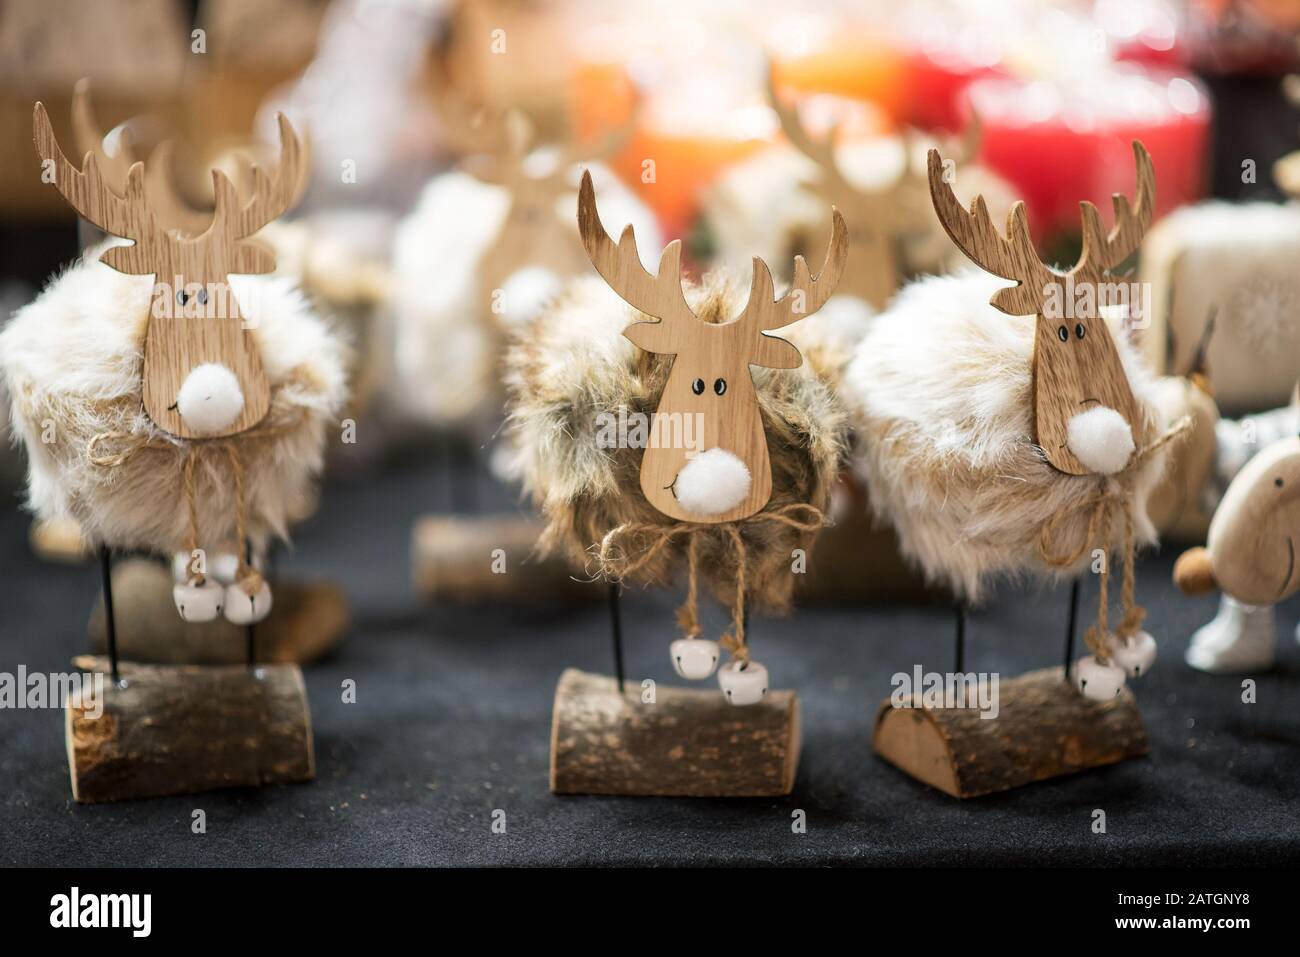 Handgearbeitete rustikale Weihnachts-Rentiere-Souvenirs und Kerzen im Landhausstil, um die Weihnachtszeit zu feiern Stockfoto